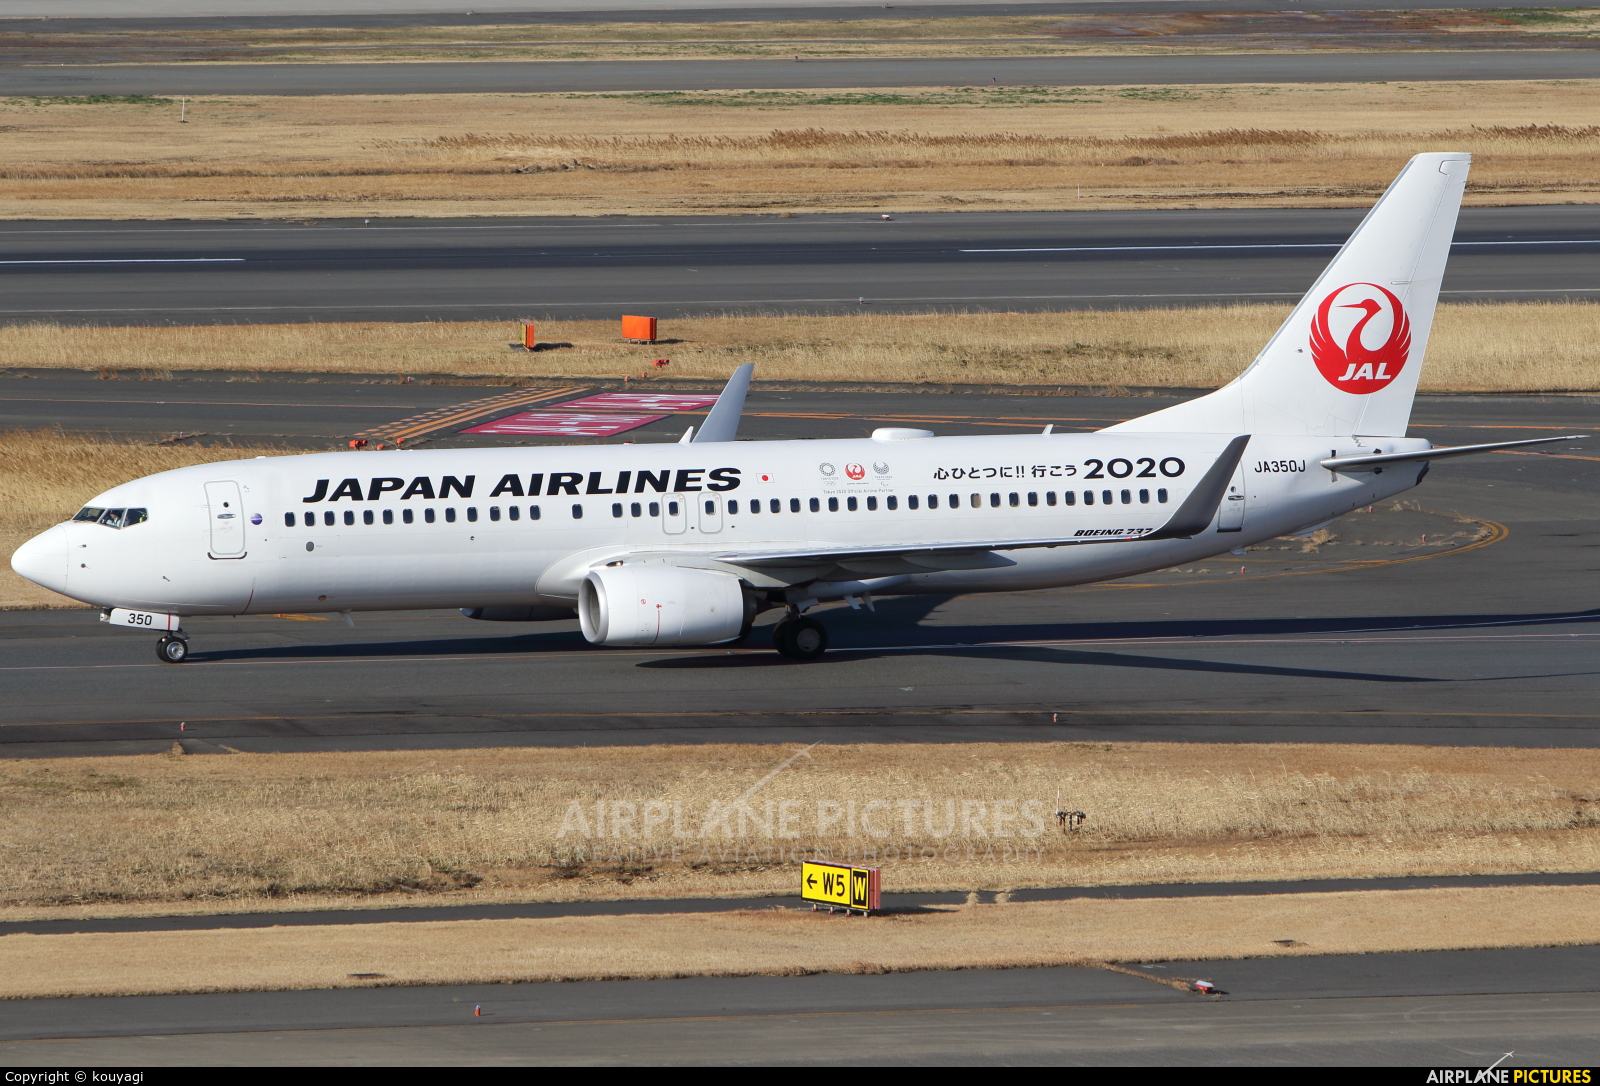 JAL - Japan Airlines JA350J aircraft at Tokyo - Haneda Intl